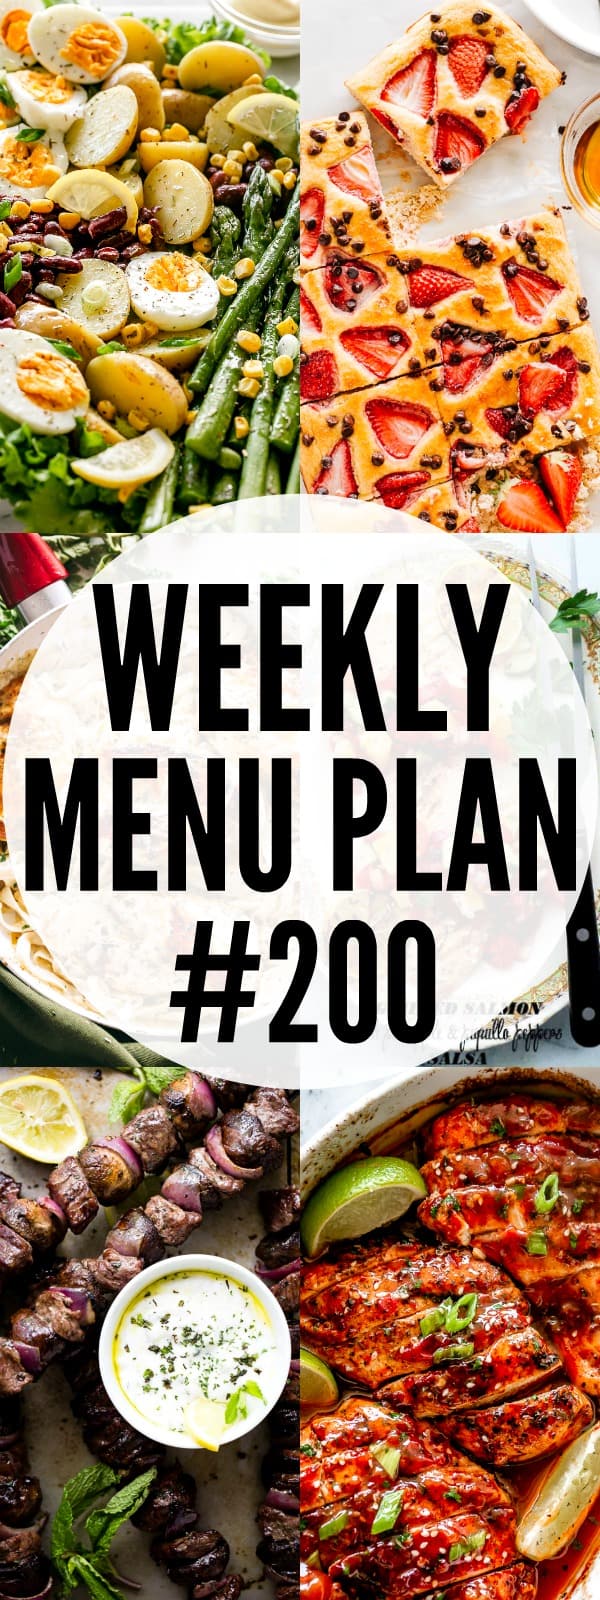 Weekly Menu Plan 200 Pin Image